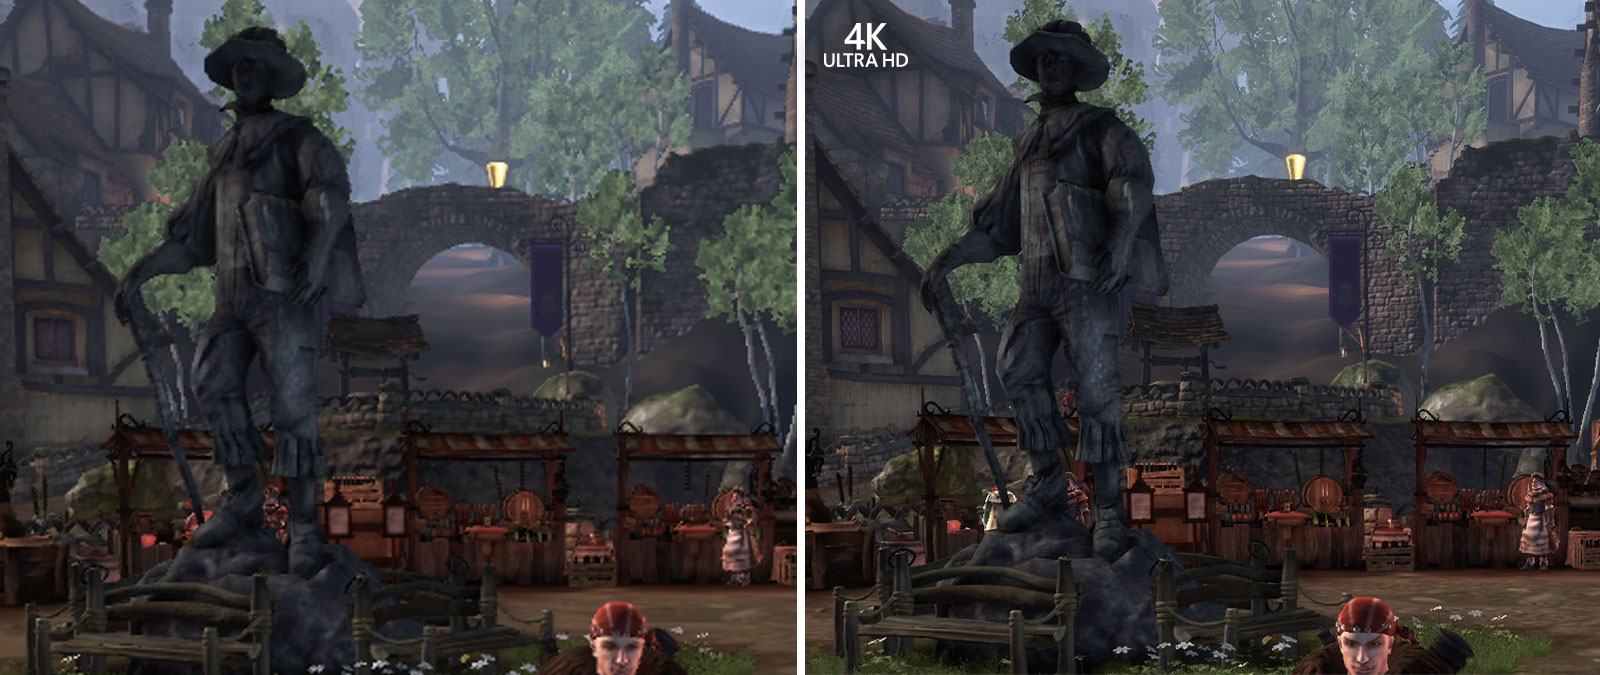 4K Ultra HD, Capturas de ecrã de comparação do Fable Anniversary ampliadas para realçar os detalhes em segundo plano